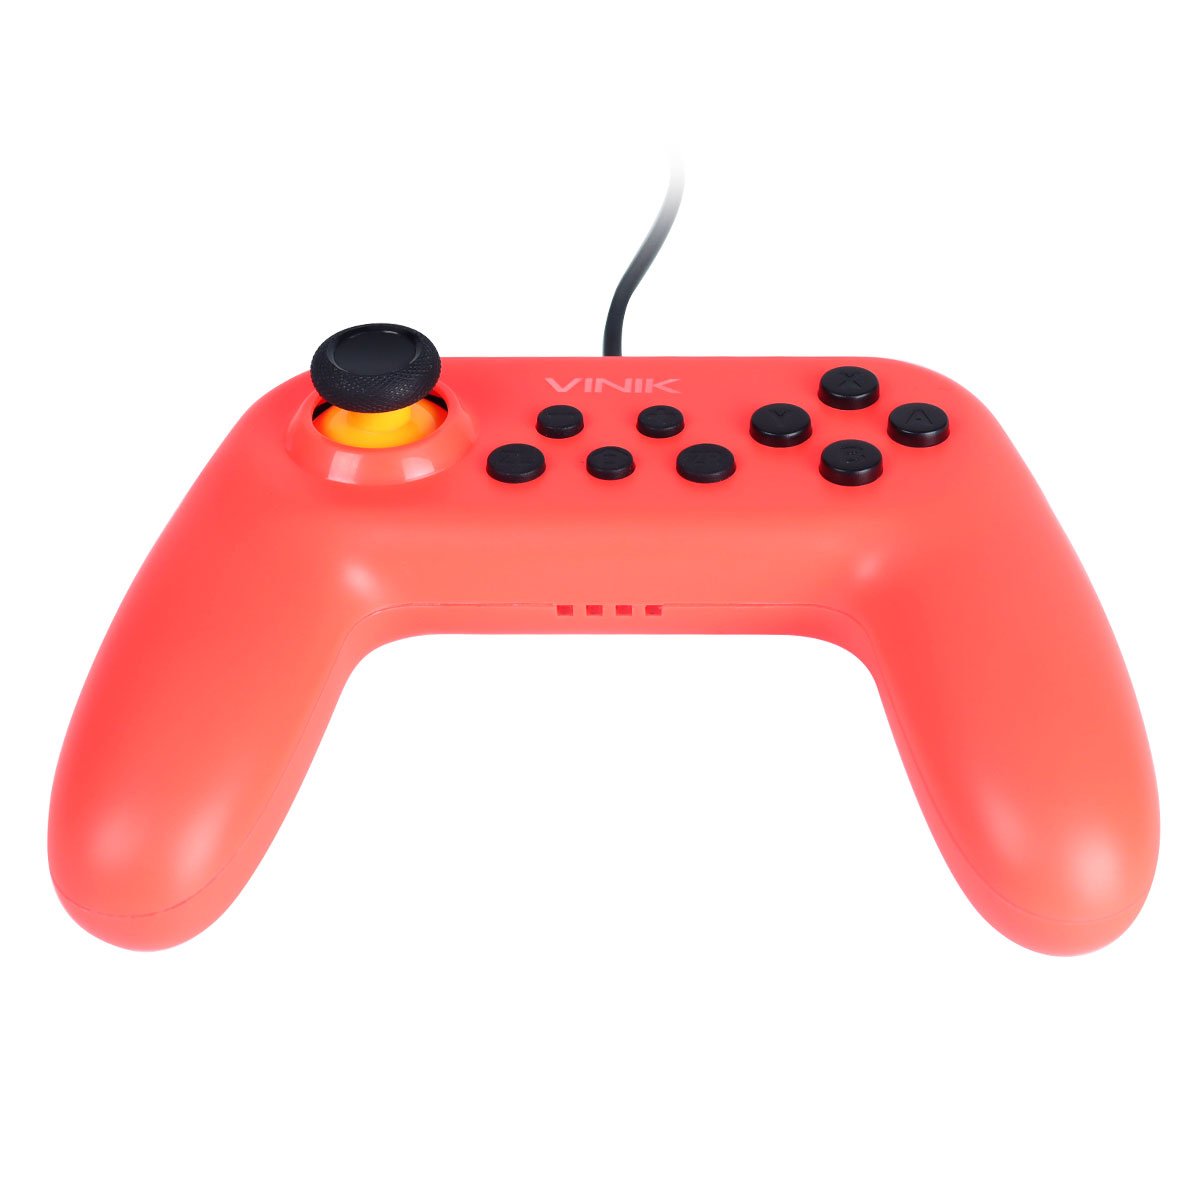 Kit Com 2 Controles Para Nintendo Switch Com Fio Usb Modelo Ns Color - Vinik - 4